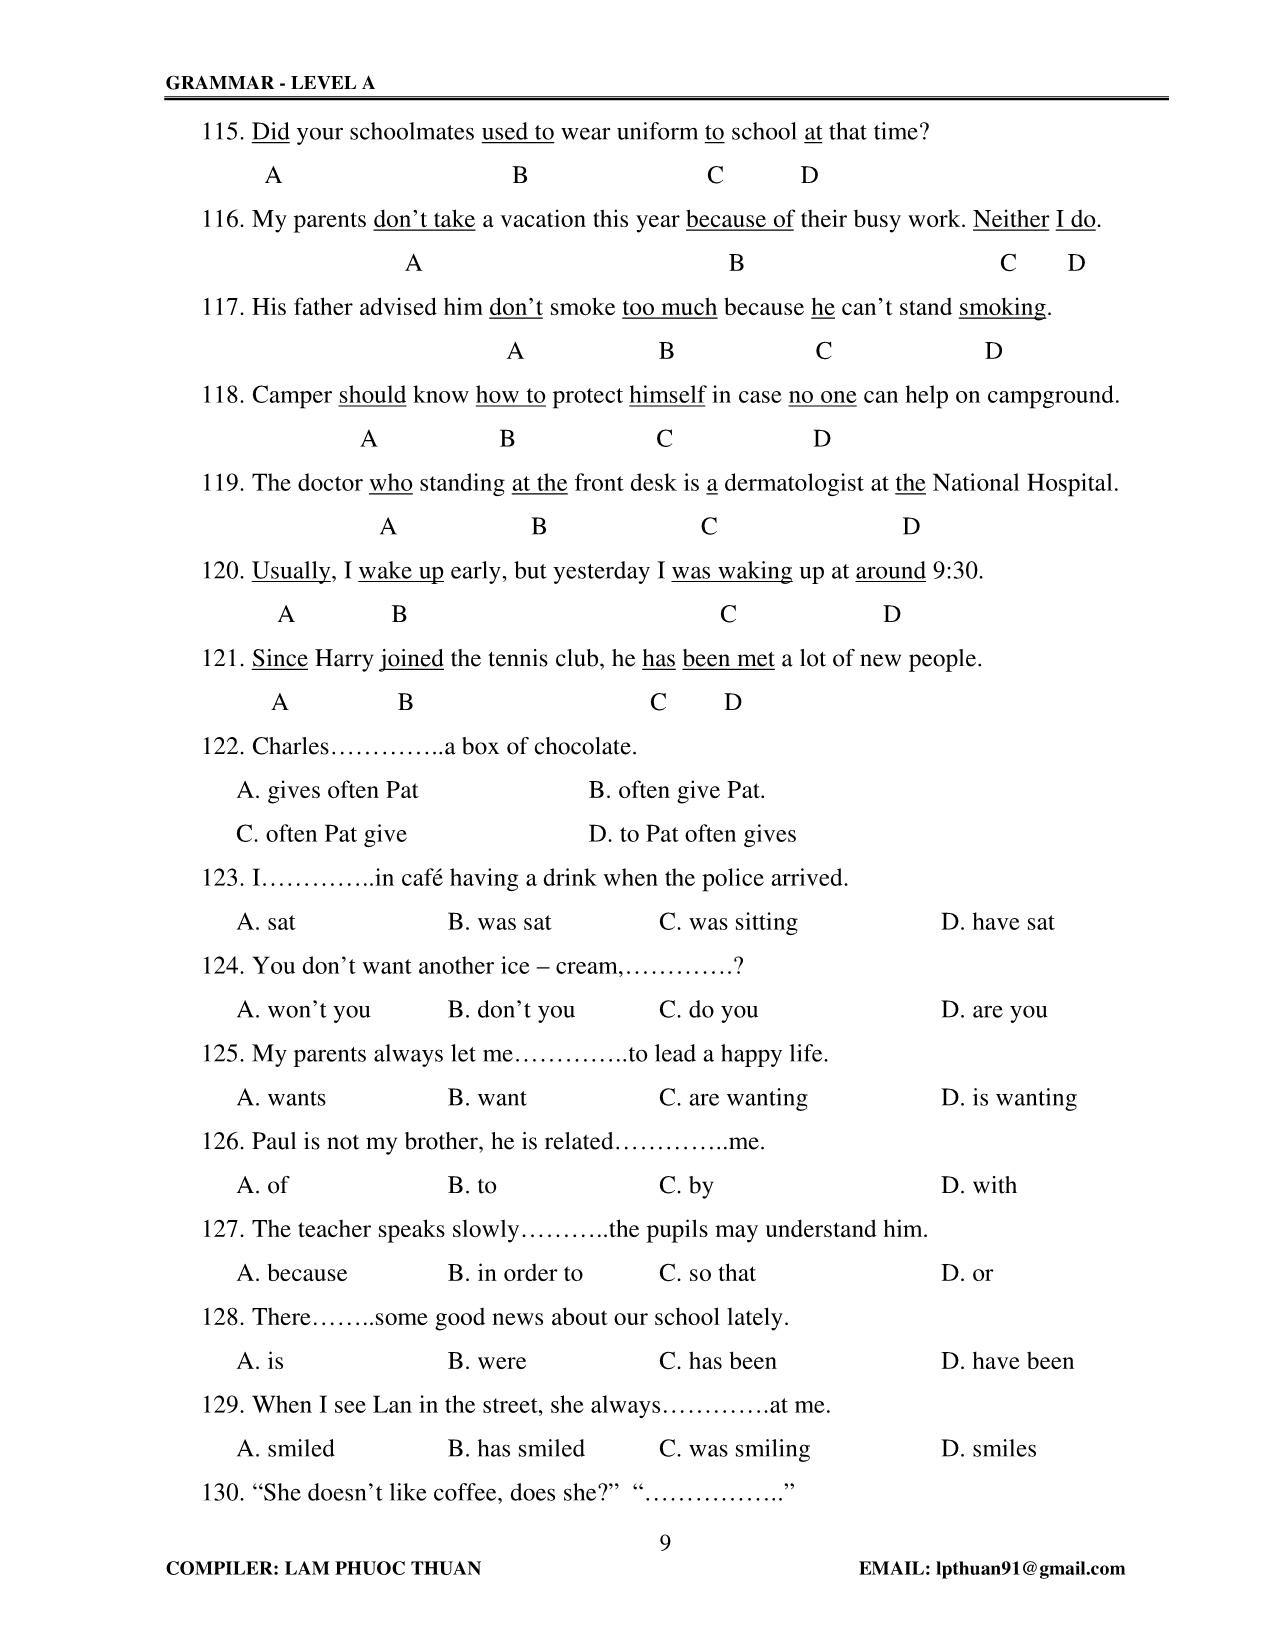 Tiếng Anh - Grammar level A trang 9